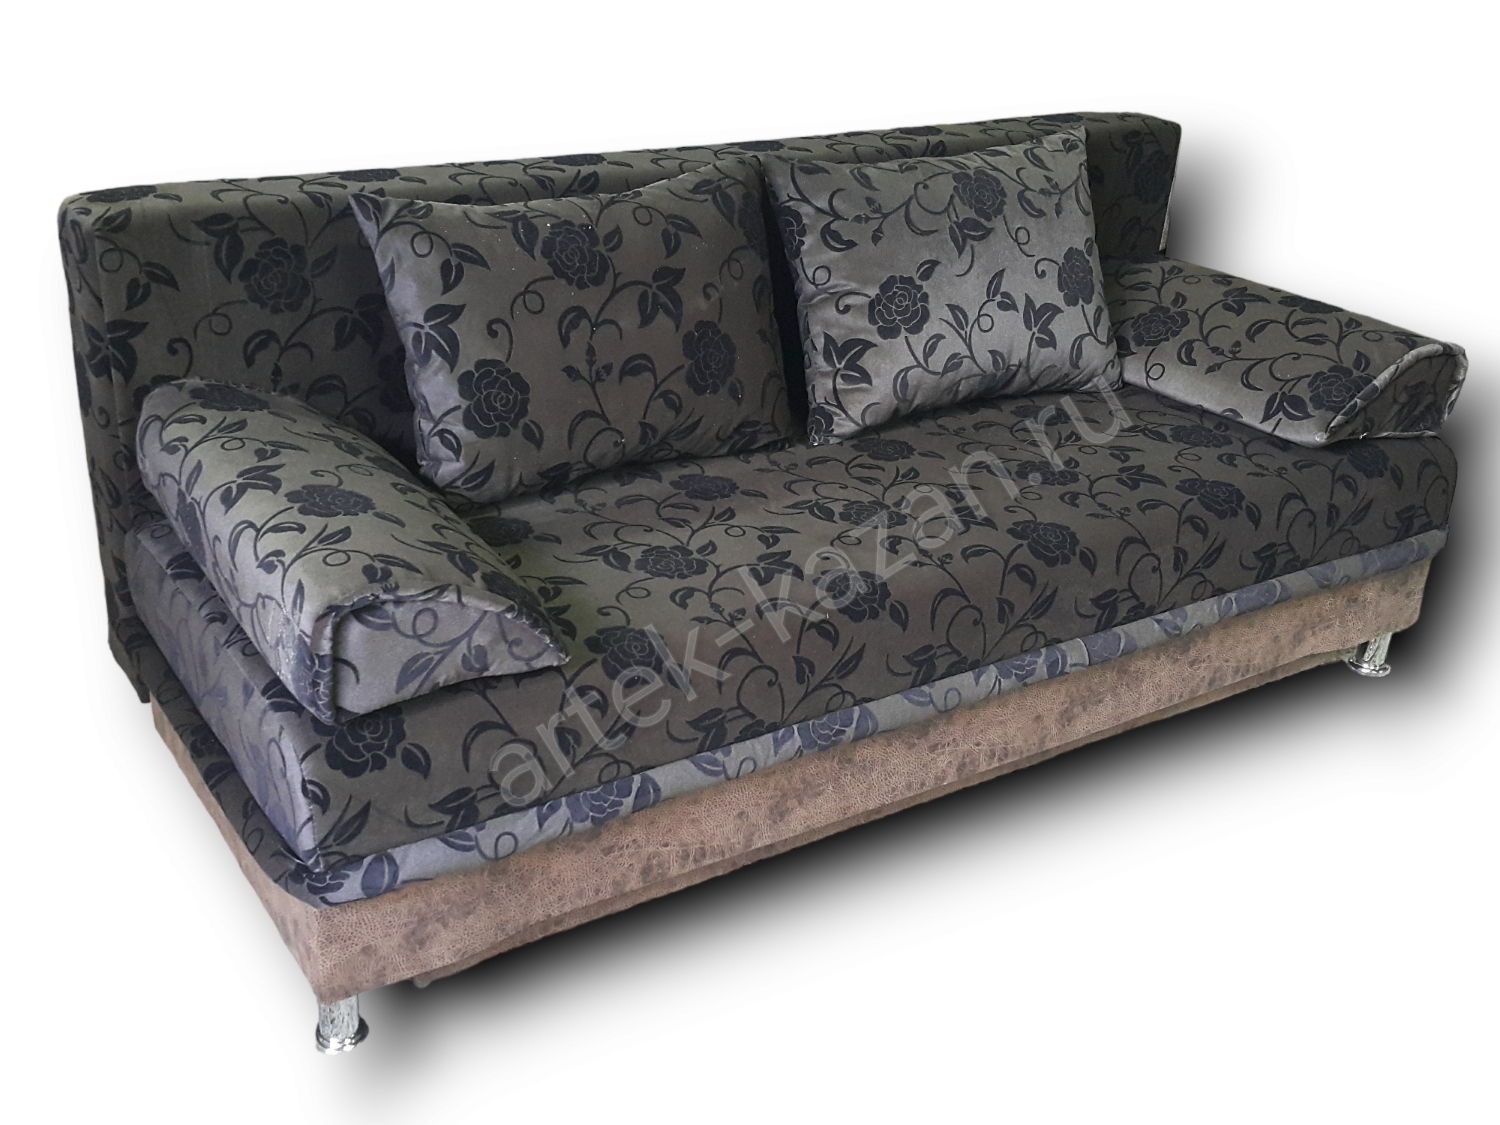 диван еврокнижка Эконом фото № 42. Купить недорогой диван по низкой цене от производителя можно у нас.